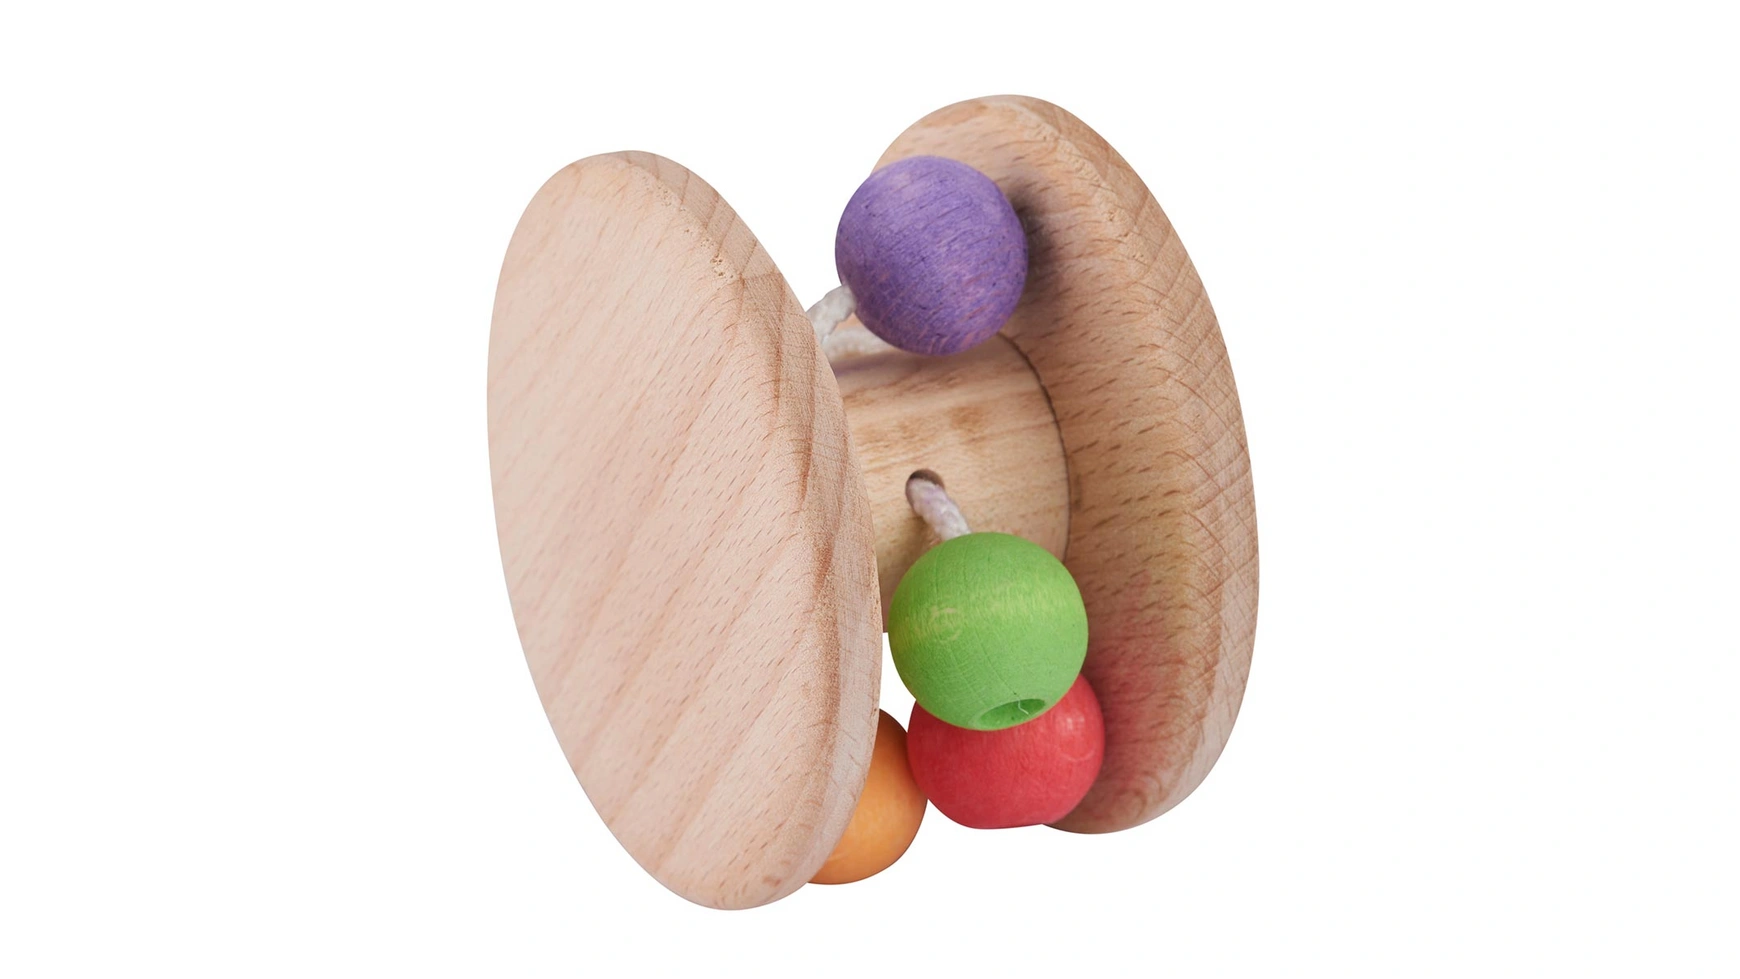 Nic Рэттролл (Органический) детская деревянная игрушка деревянная захватывающая игрушка деревянная обучающая игрушка для малышей